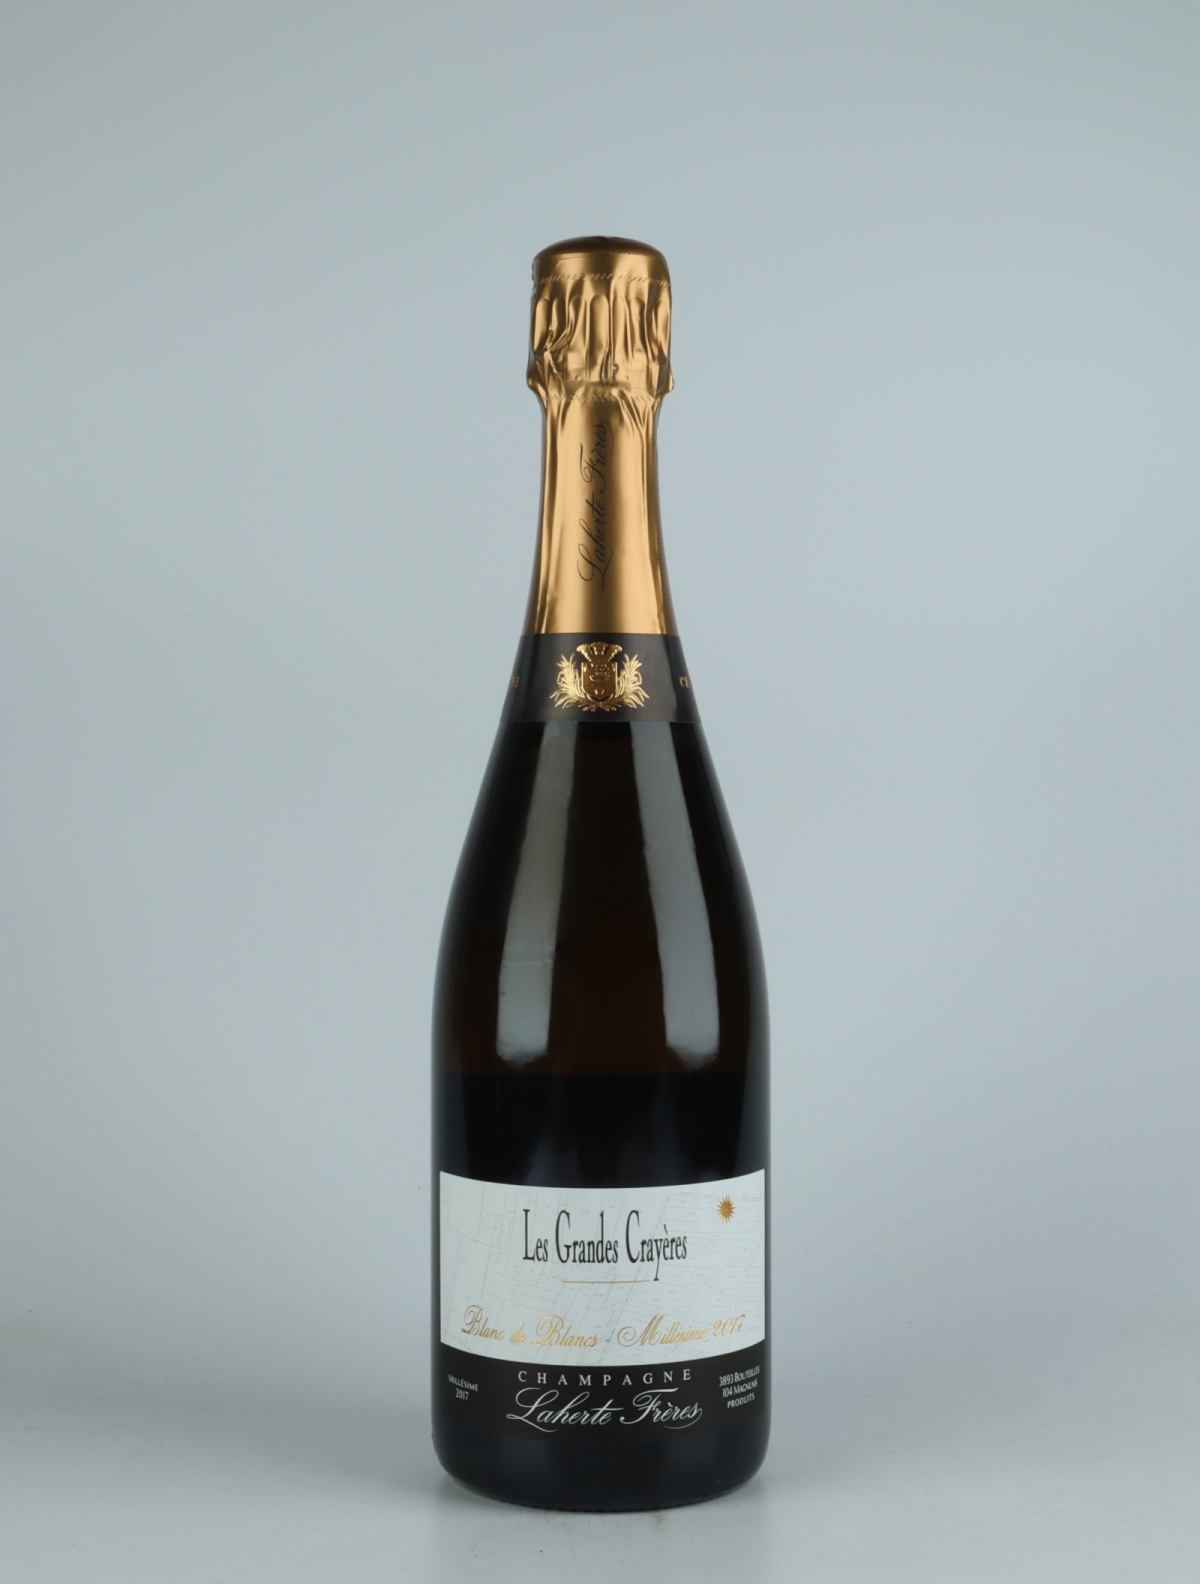 En flaske 2017 Les Grandes Crayeres Mousserende fra Laherte Frères, Champagne i Frankrig